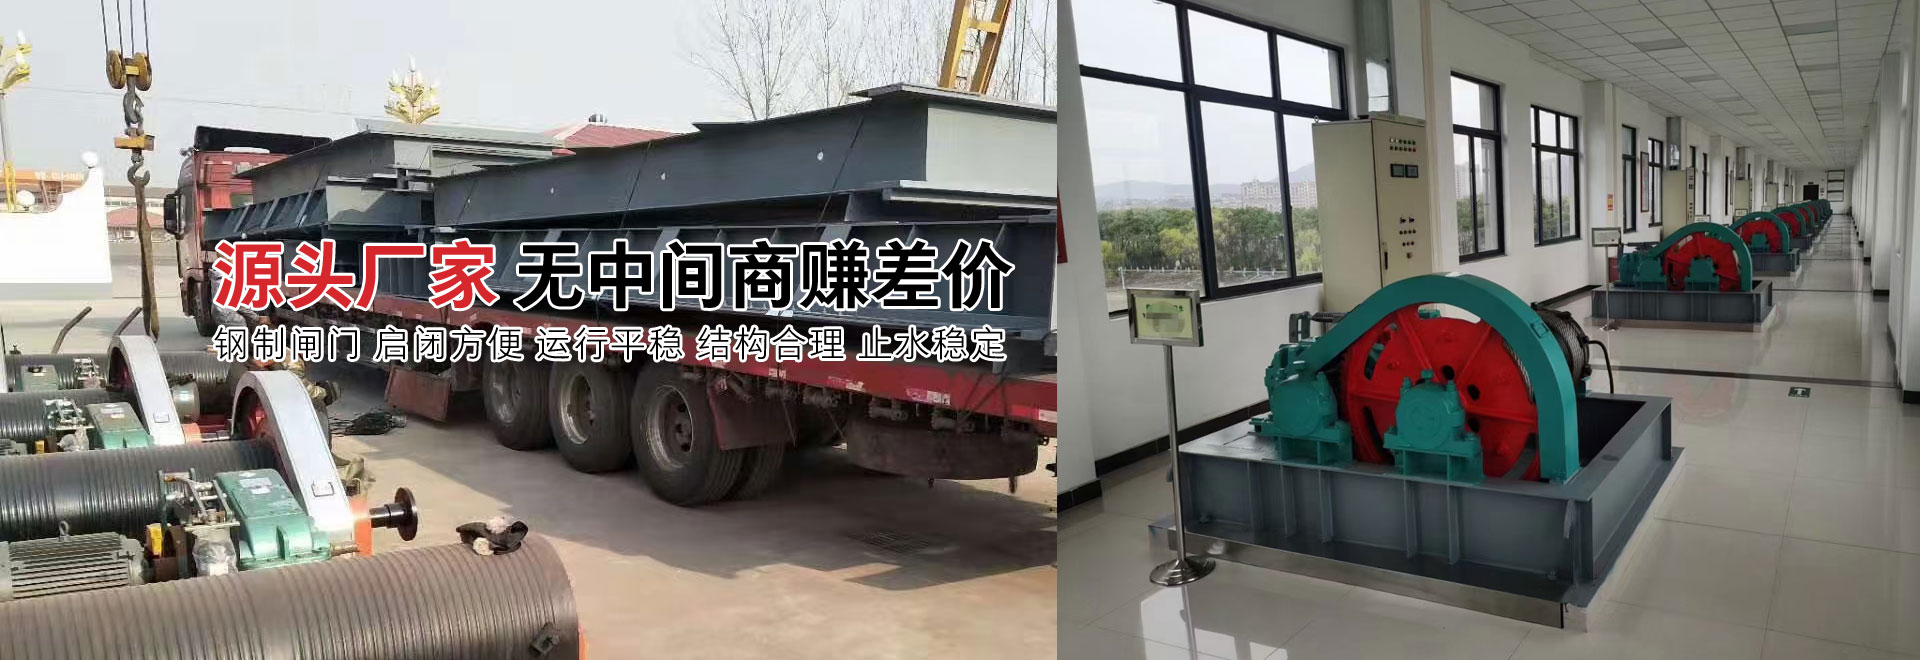 新河县环洲水工机械有限公司